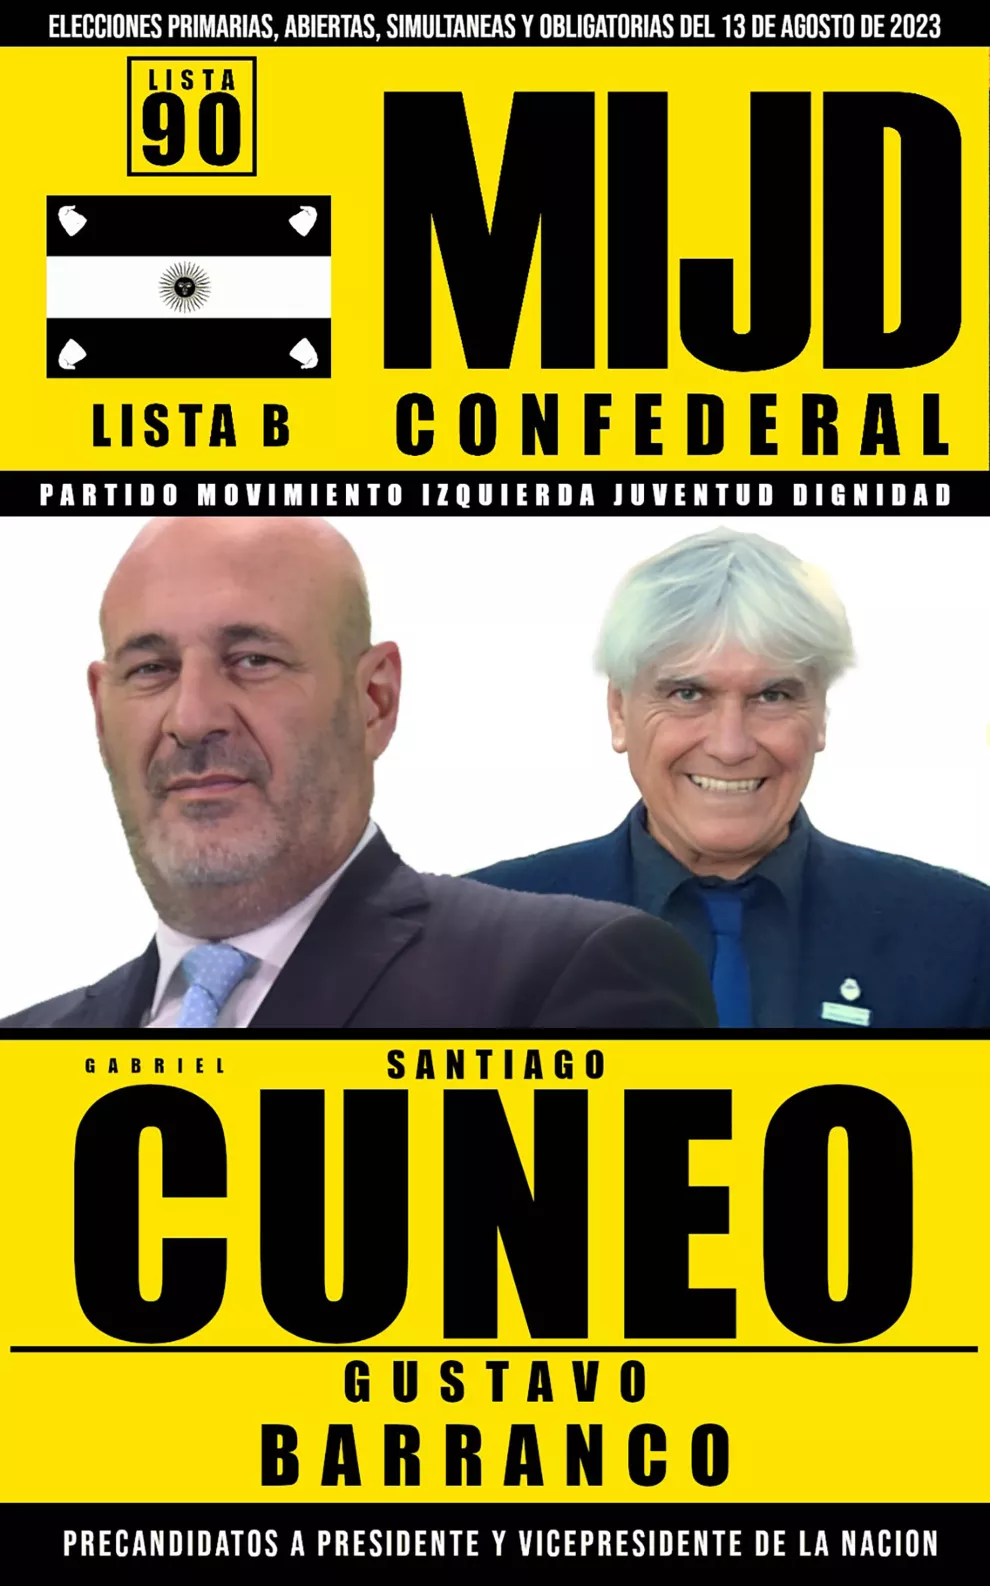 Santiago Cuneo y Gustavo Barranco, por MIJD Confederal.